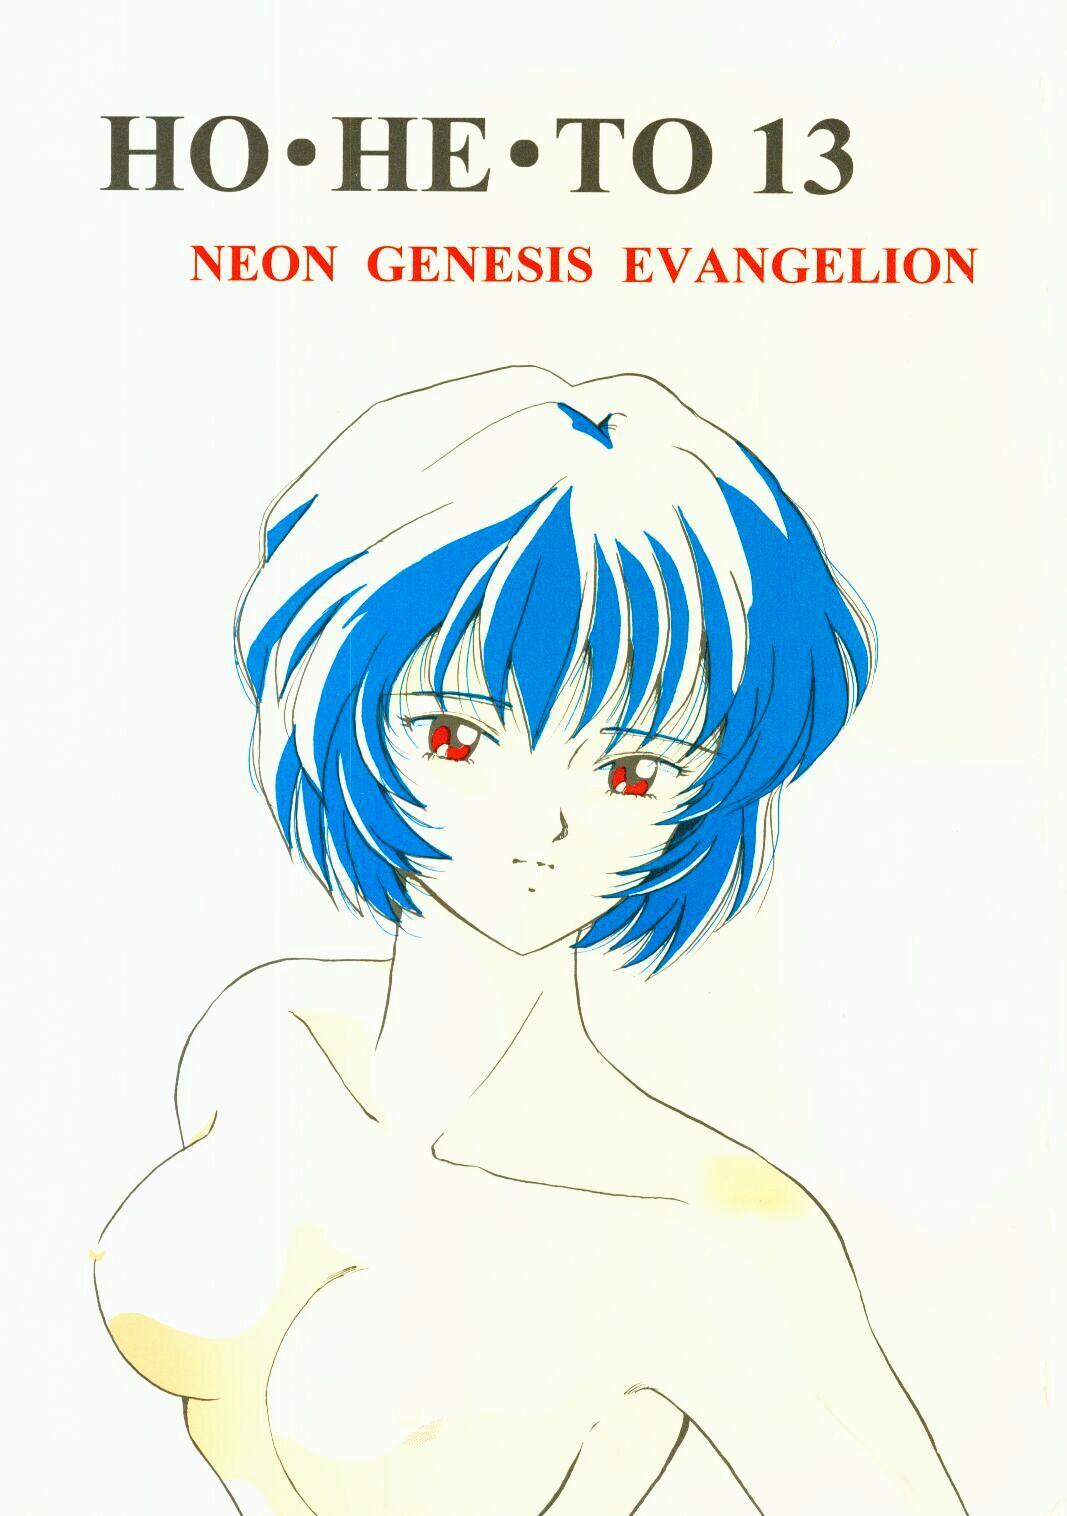 Polla (C50) [Studio Boxer (Shima Takashi, Taka) HOHETO 13 (Neon Genesis Evangelion) - Neon genesis evangelion Old Vs Young - Picture 1